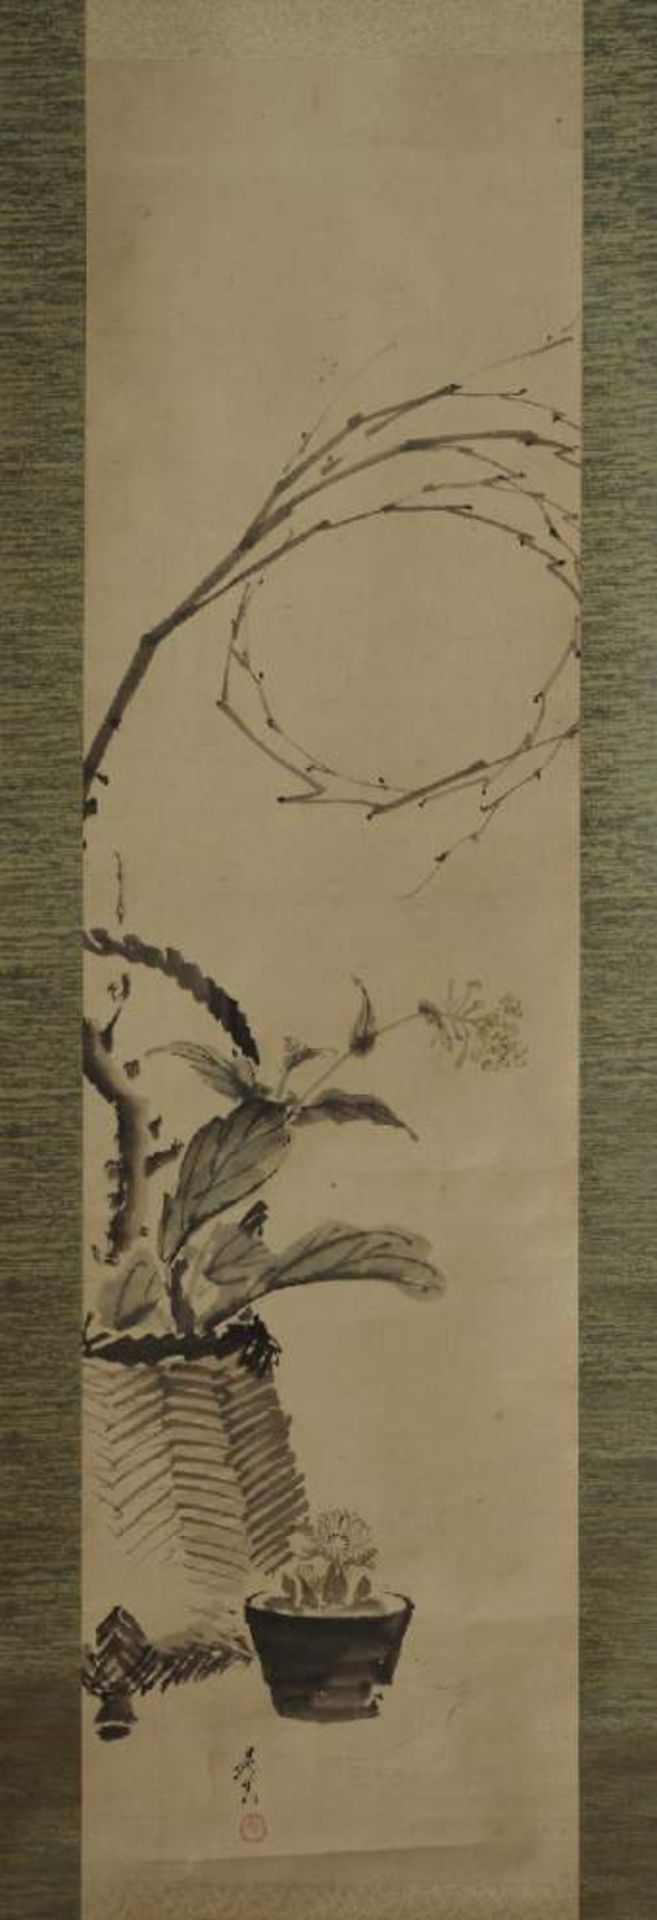 SHIBATA ZESHIN: BLUMENKORB UND KAKTUSTusche und leichte Farben auf Papier. Jikusaki aus poliertem